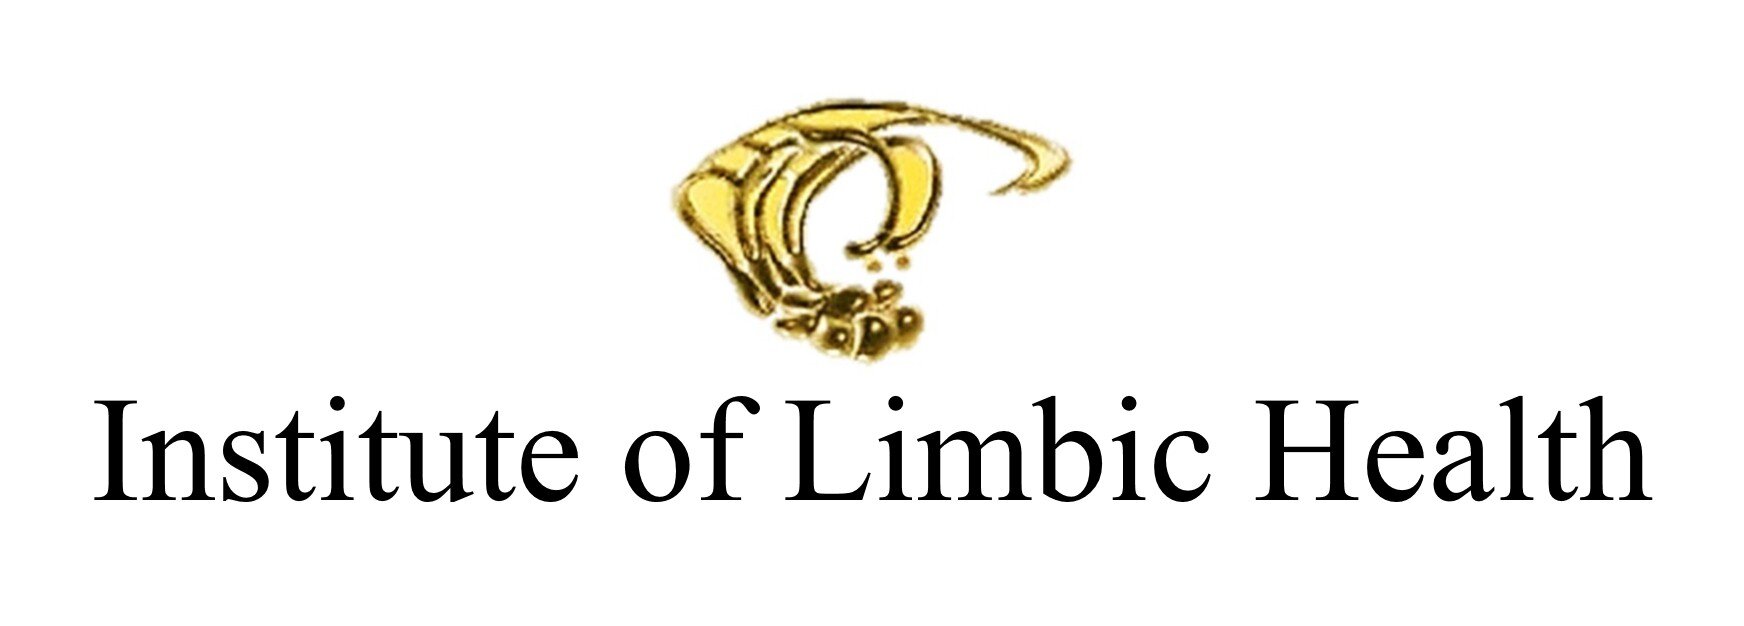 Institute of Limbic Health